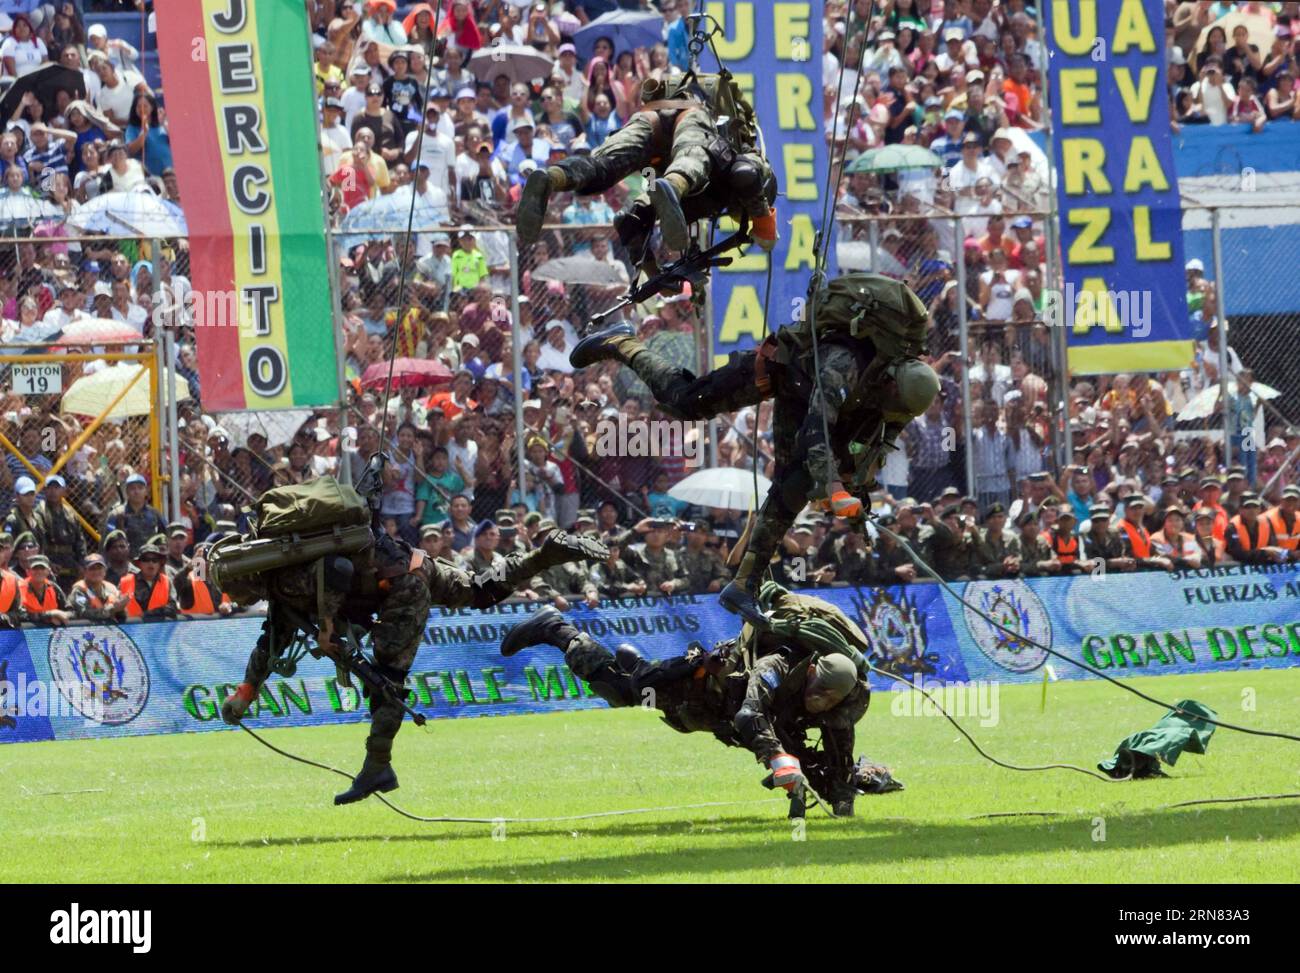 (151004) -- TEGUCIGALPA, 4 octobre 2015 -- des soldats des forces armées honduriennes effectuent des exercices militaires lors de la célébration de la Journée du soldat au Stade national de Tegucigalpa, capitale du Honduras, le 3 octobre 2015. Selon la presse locale, chaque 3 octobre est célébré au Honduras la Journée du Soldat, pour marquer la commémoration de la naissance du général hondurien Francisco Morazan. Rafael Ochoa) (jp) (fnc) HONDURAS-TEGUCIGALPA-JOURNÉE MILITAIRE DU SOLDAT e RAFAELxOCHOA PUBLICATIONxNOTxINxCHN Tegucigalpa OCT 4 2015 soldats des forces armées honduriennes effectuent des exercices militaires pendant le Banque D'Images